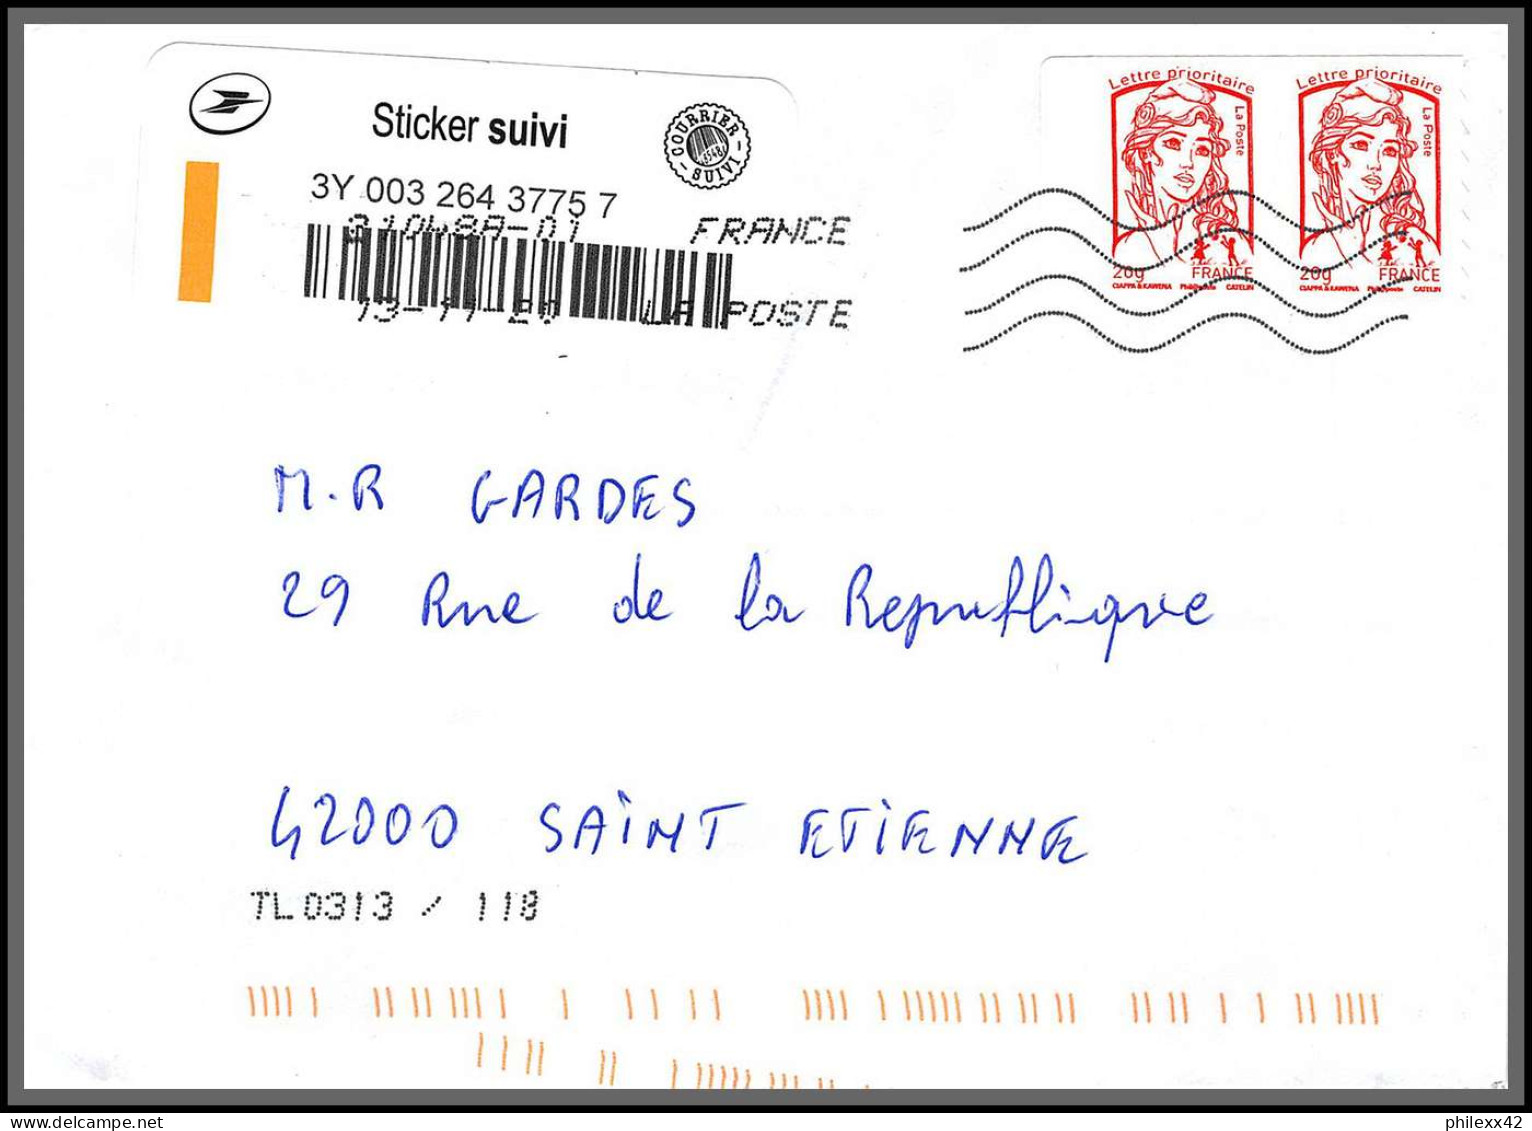 95812 - lot de 98 courriers lettres enveloppes période du second confinement COVID 30 octobre au 15 decembre 2020 